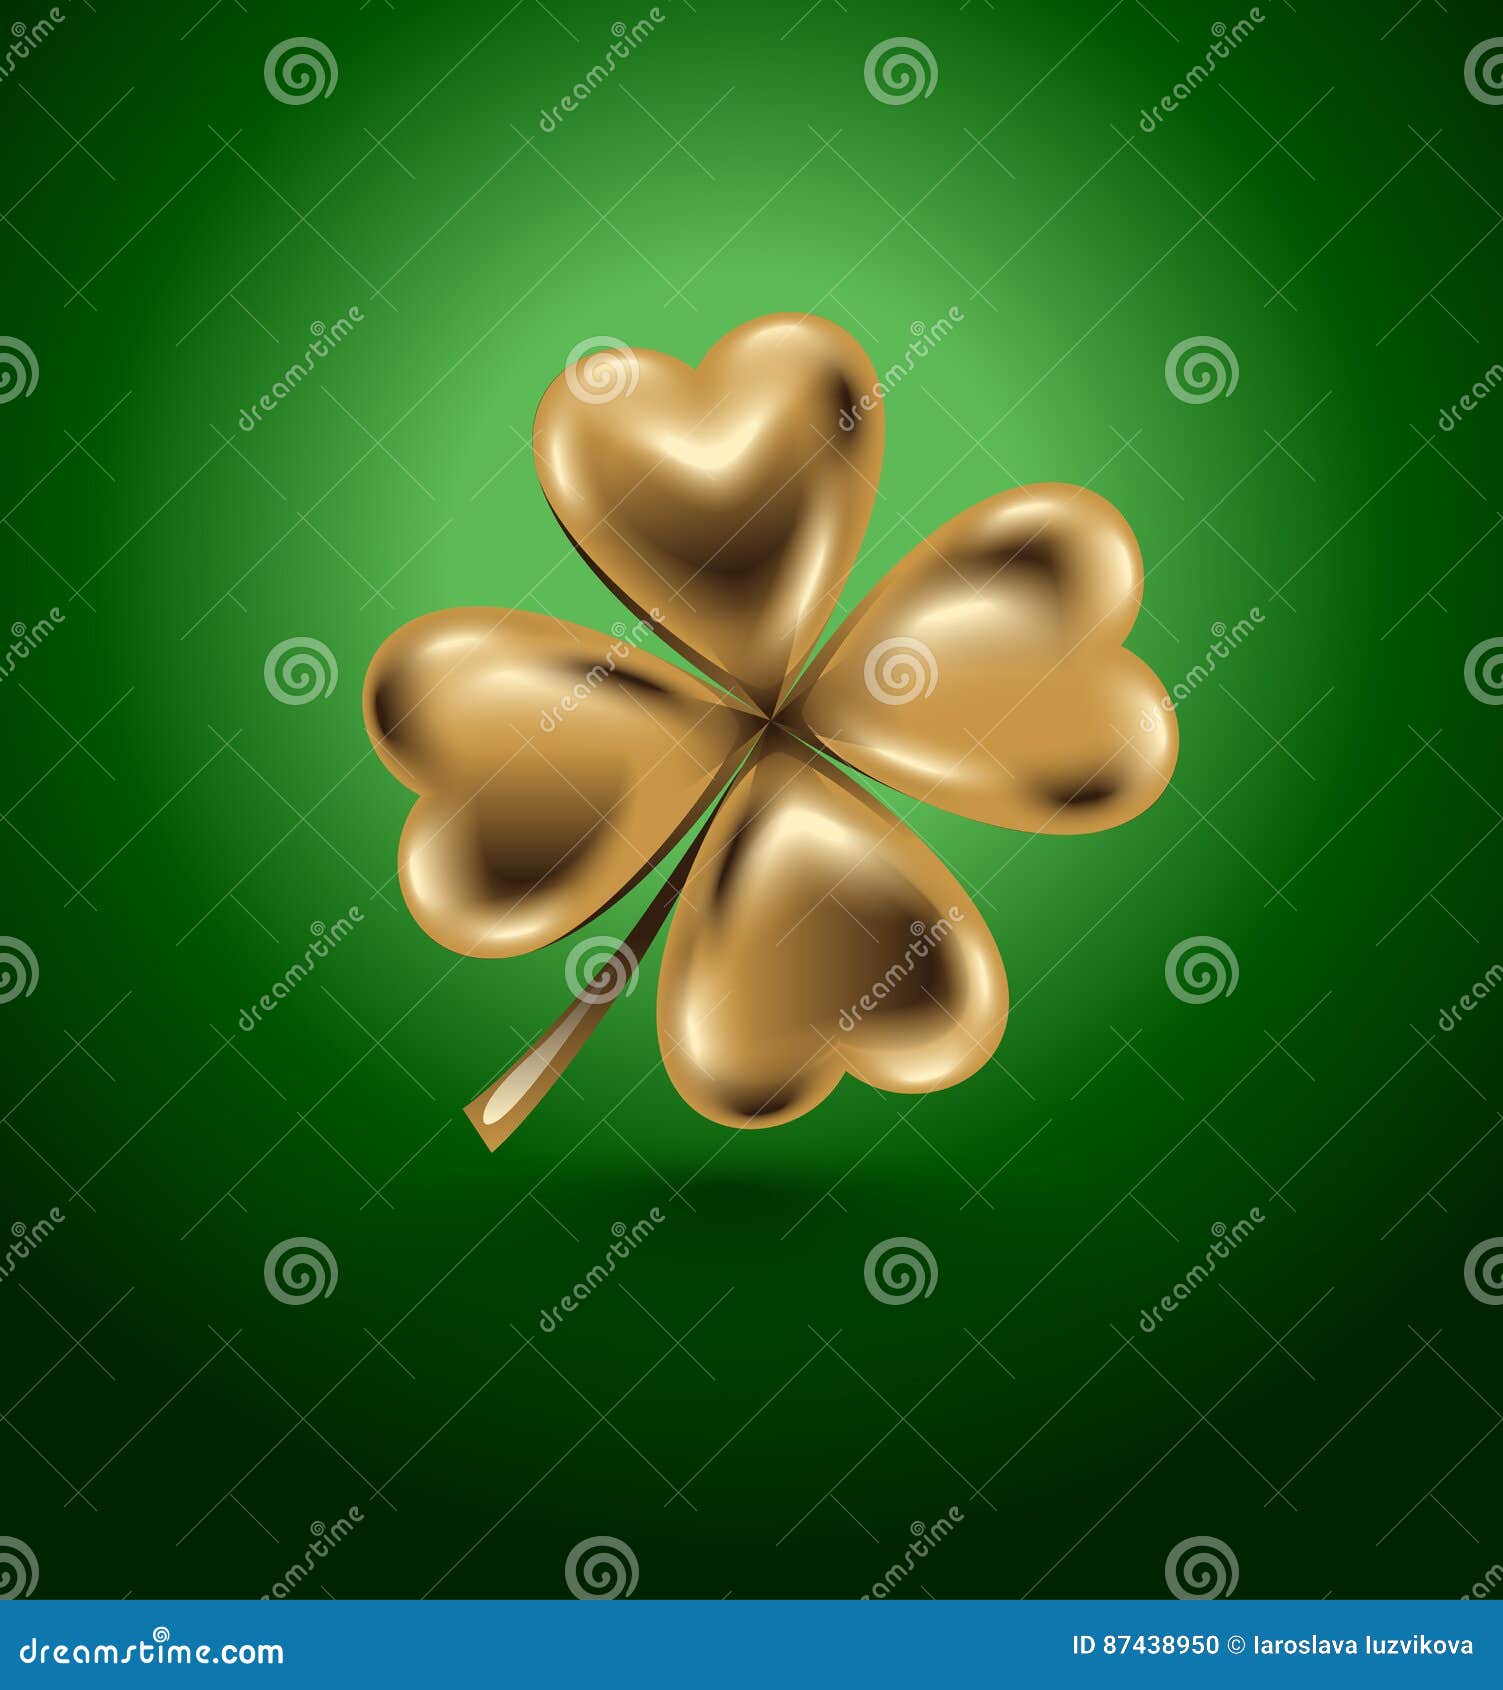 Chào mừng ngày St. Patrick, hình ảnh minh họa với 4 lá vàng và hình vector này sẽ mang đến những trải nghiệm tuyệt vời cho bạn. Đây là hình nền phù hợp cho những người yêu thích phong cách trang trí độc đáo và phá cách. Hãy xem ngay hình ảnh liên quan để chúc mừng một ngày lễ rộn ràng.